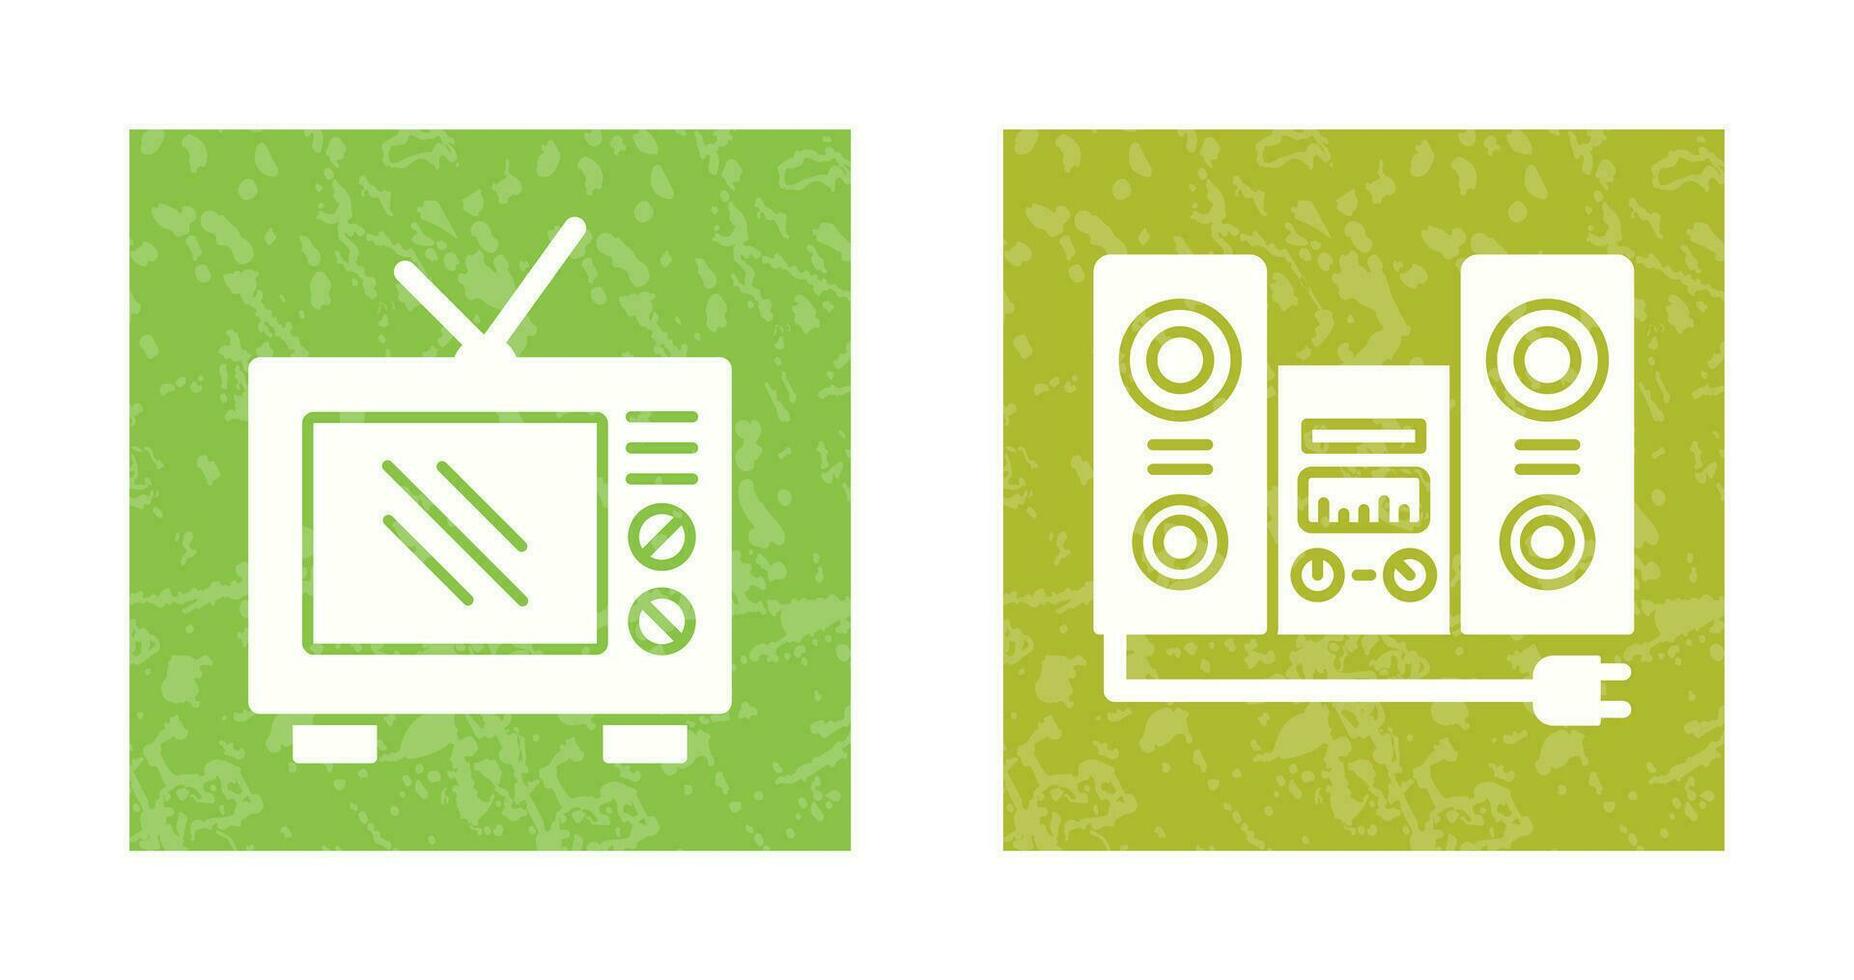 antiguo televisión y estéreo icono vector